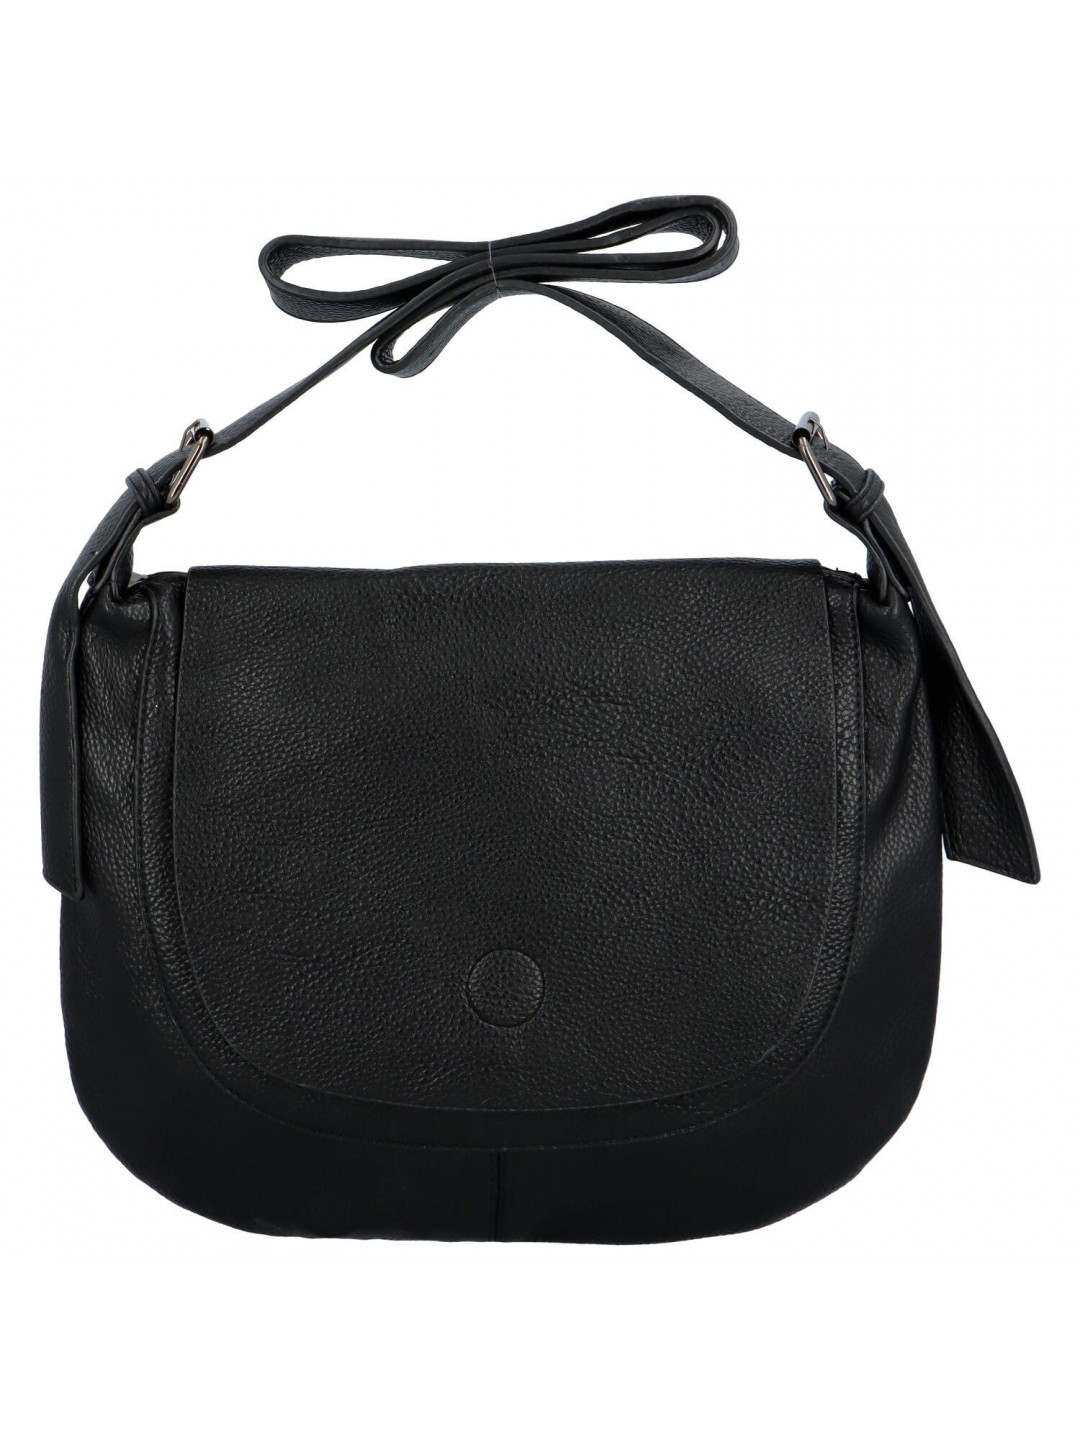 Dámská crossbody kabelka černá – Paolo bags Sisi